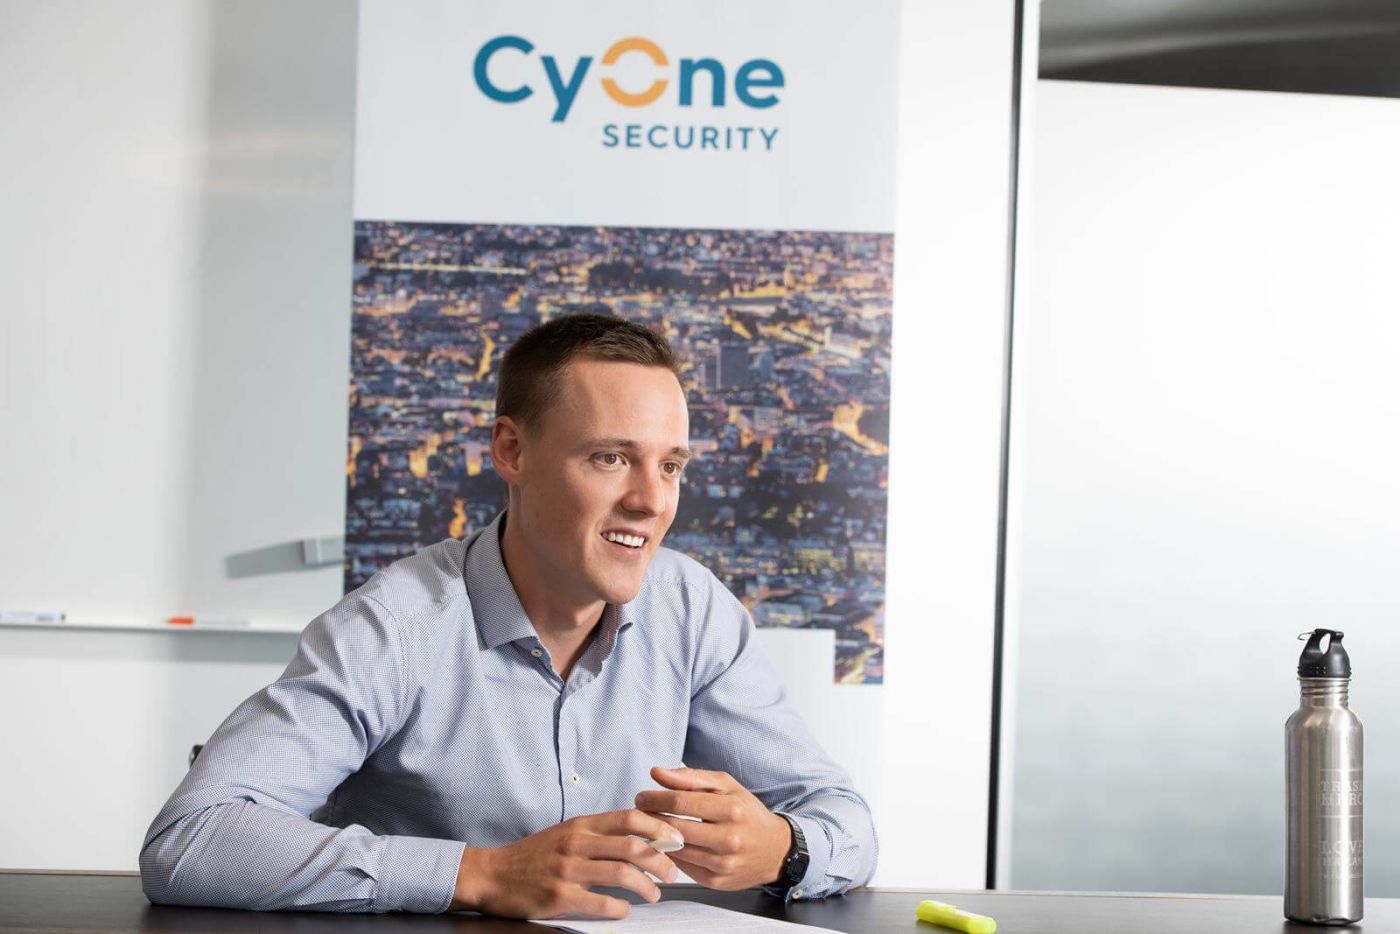 Sichere IoT-Geräte: Ein Interview mit Reto Amstad von der CyOne Security